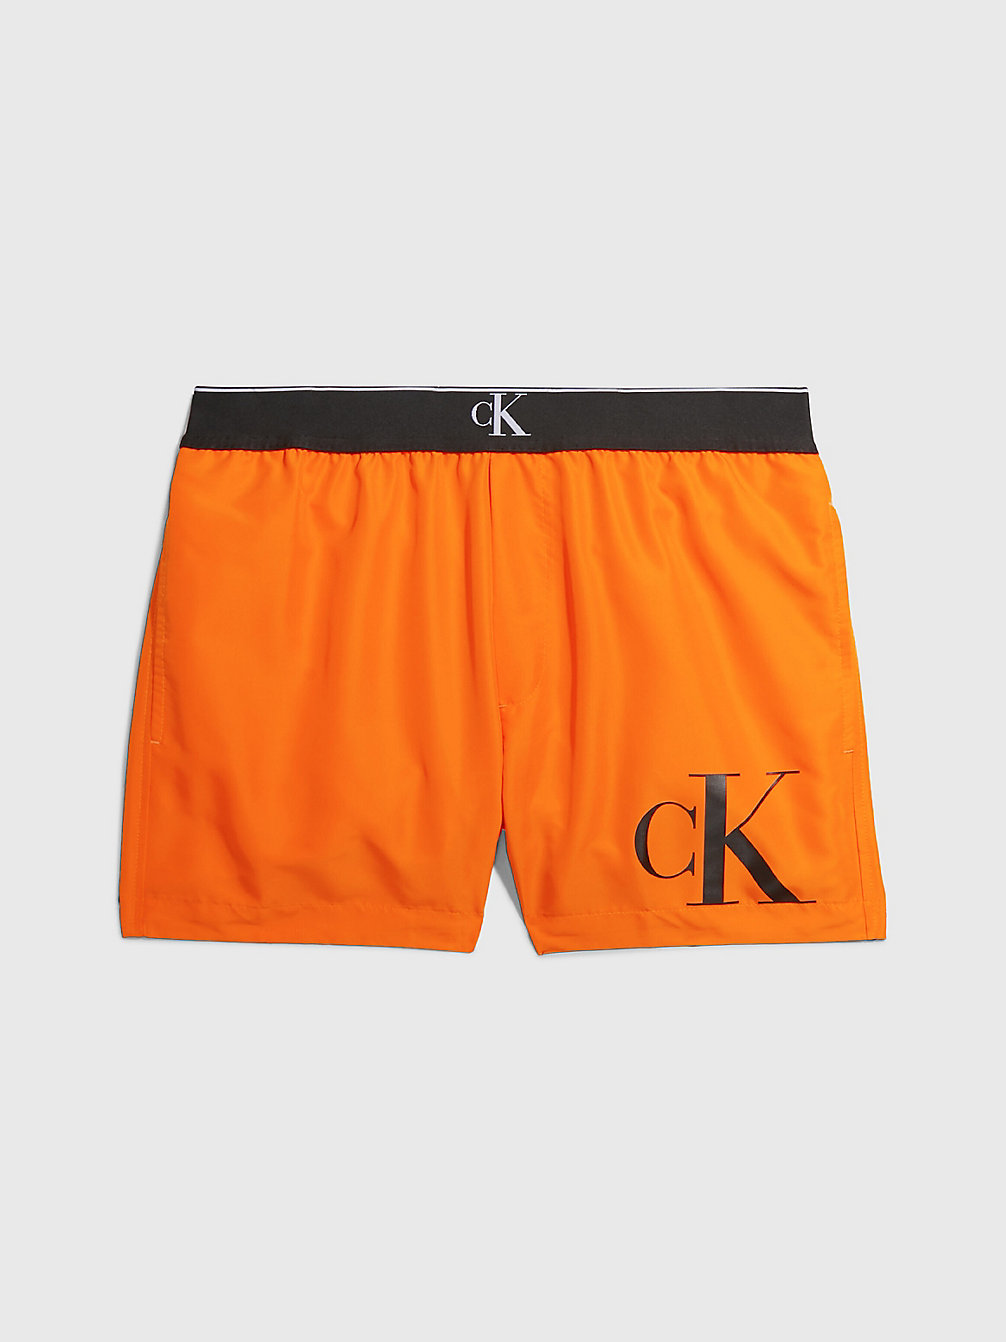 SUN KISSED ORANGE Badeshorts – CK Monogram undefined Herren Calvin Klein